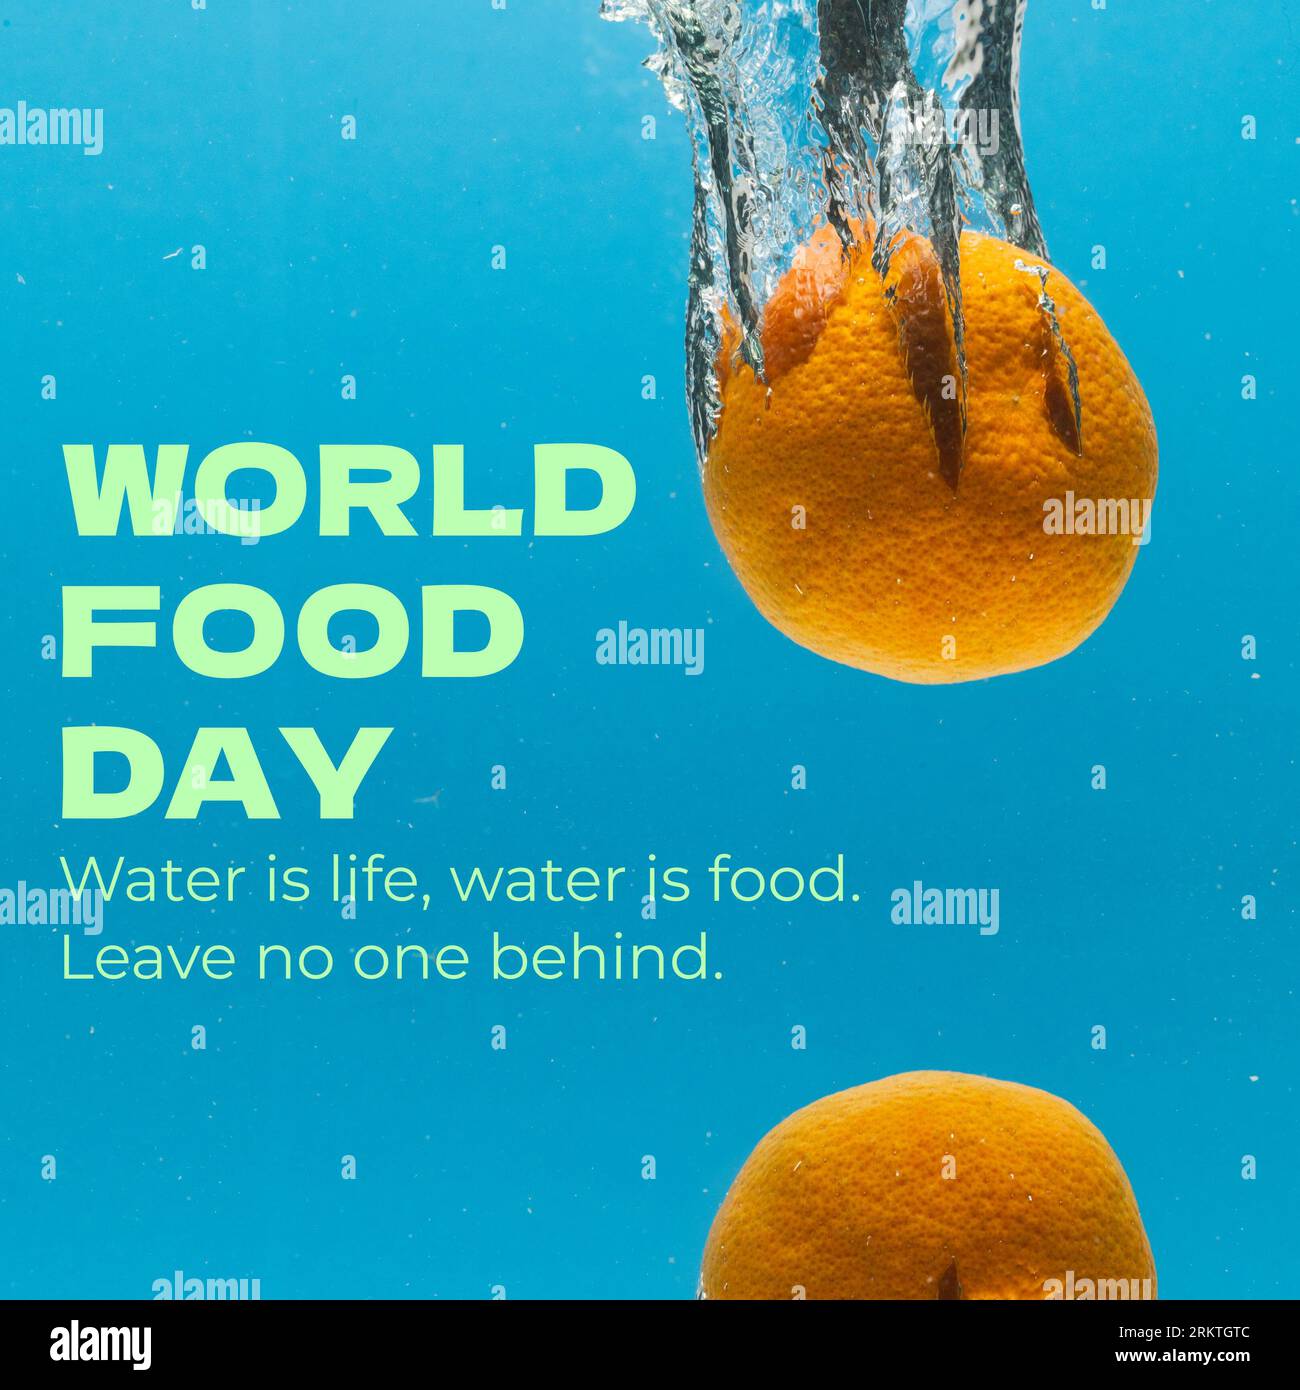 Welternährungstag und Wasser ist Leben, Wasser ist Nahrung, lassen Sie niemanden hinter sich über Orangen, die ins Wasser fallen Stockfoto